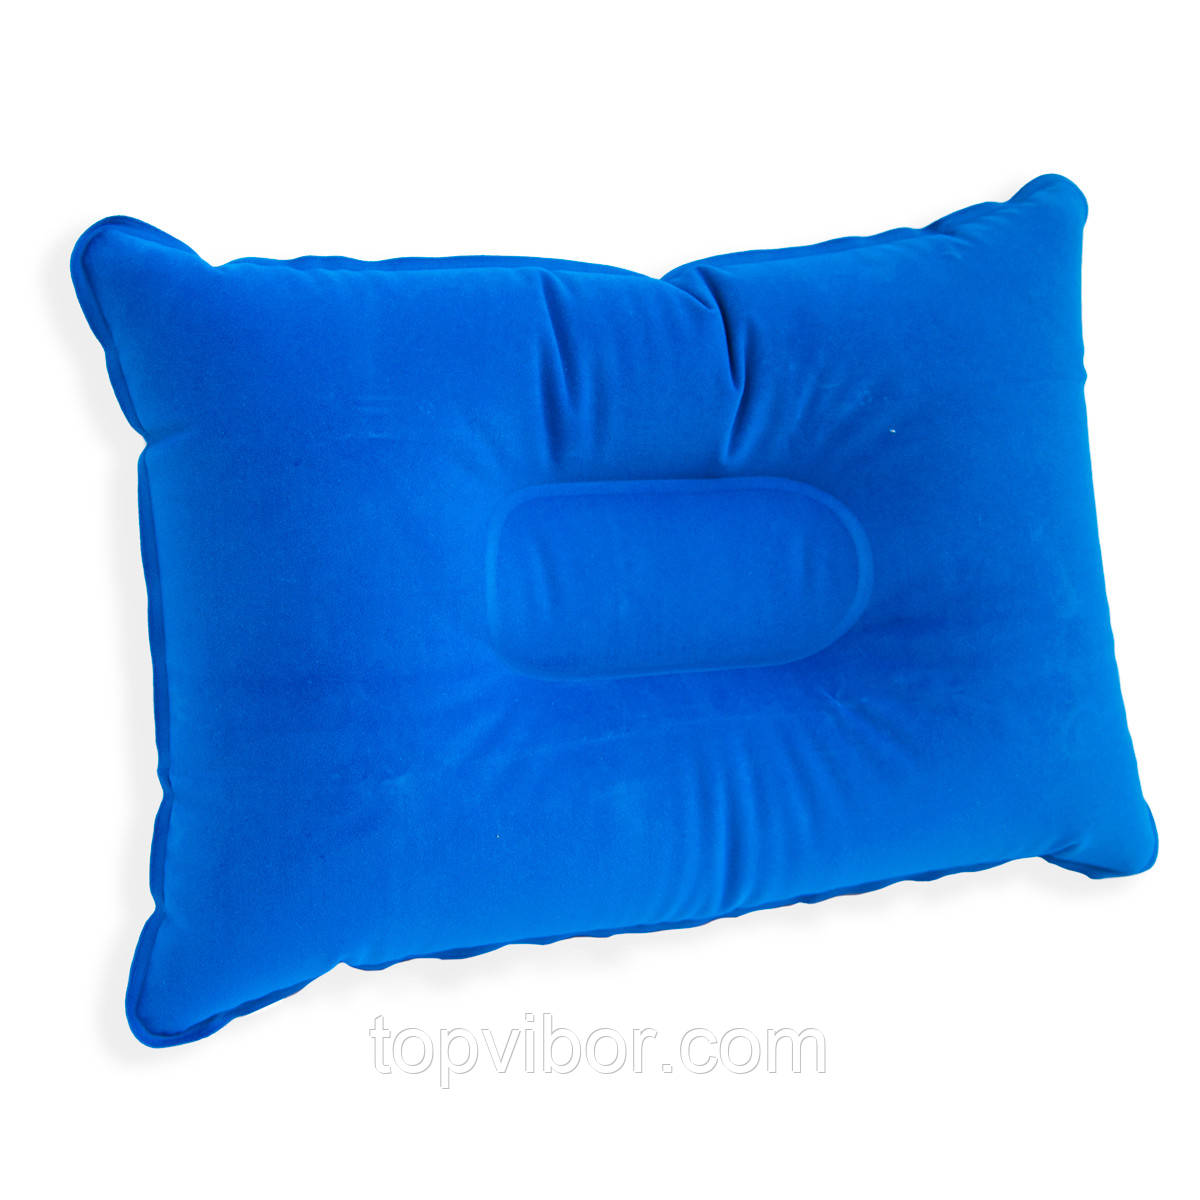 Синя подушка для подорожей надувна 34х23 см, подушка надувна туристична, дорожня, для кемпінгу